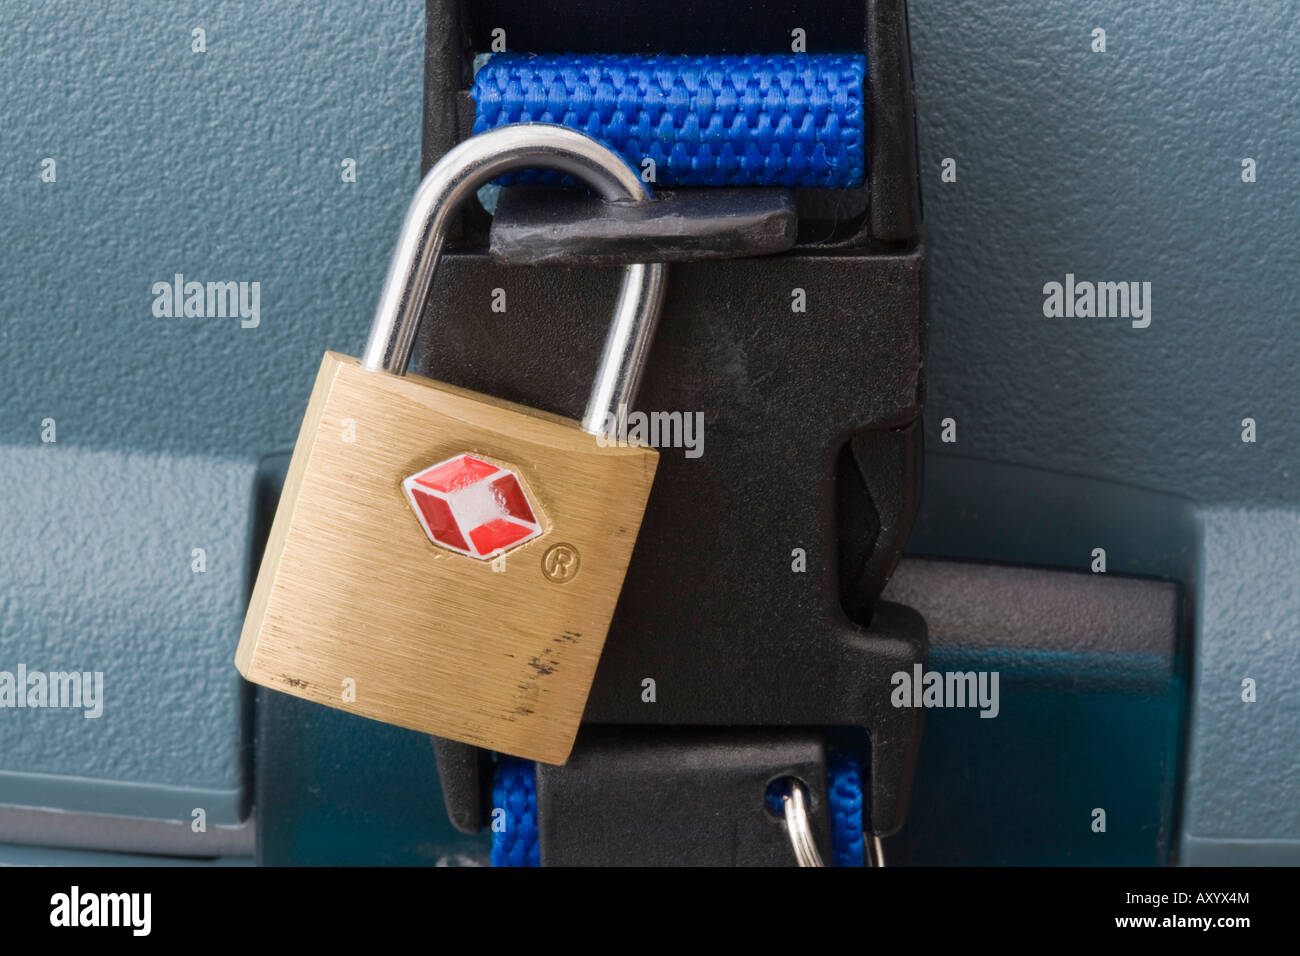 Tsa lock immagini e fotografie stock ad alta risoluzione - Alamy